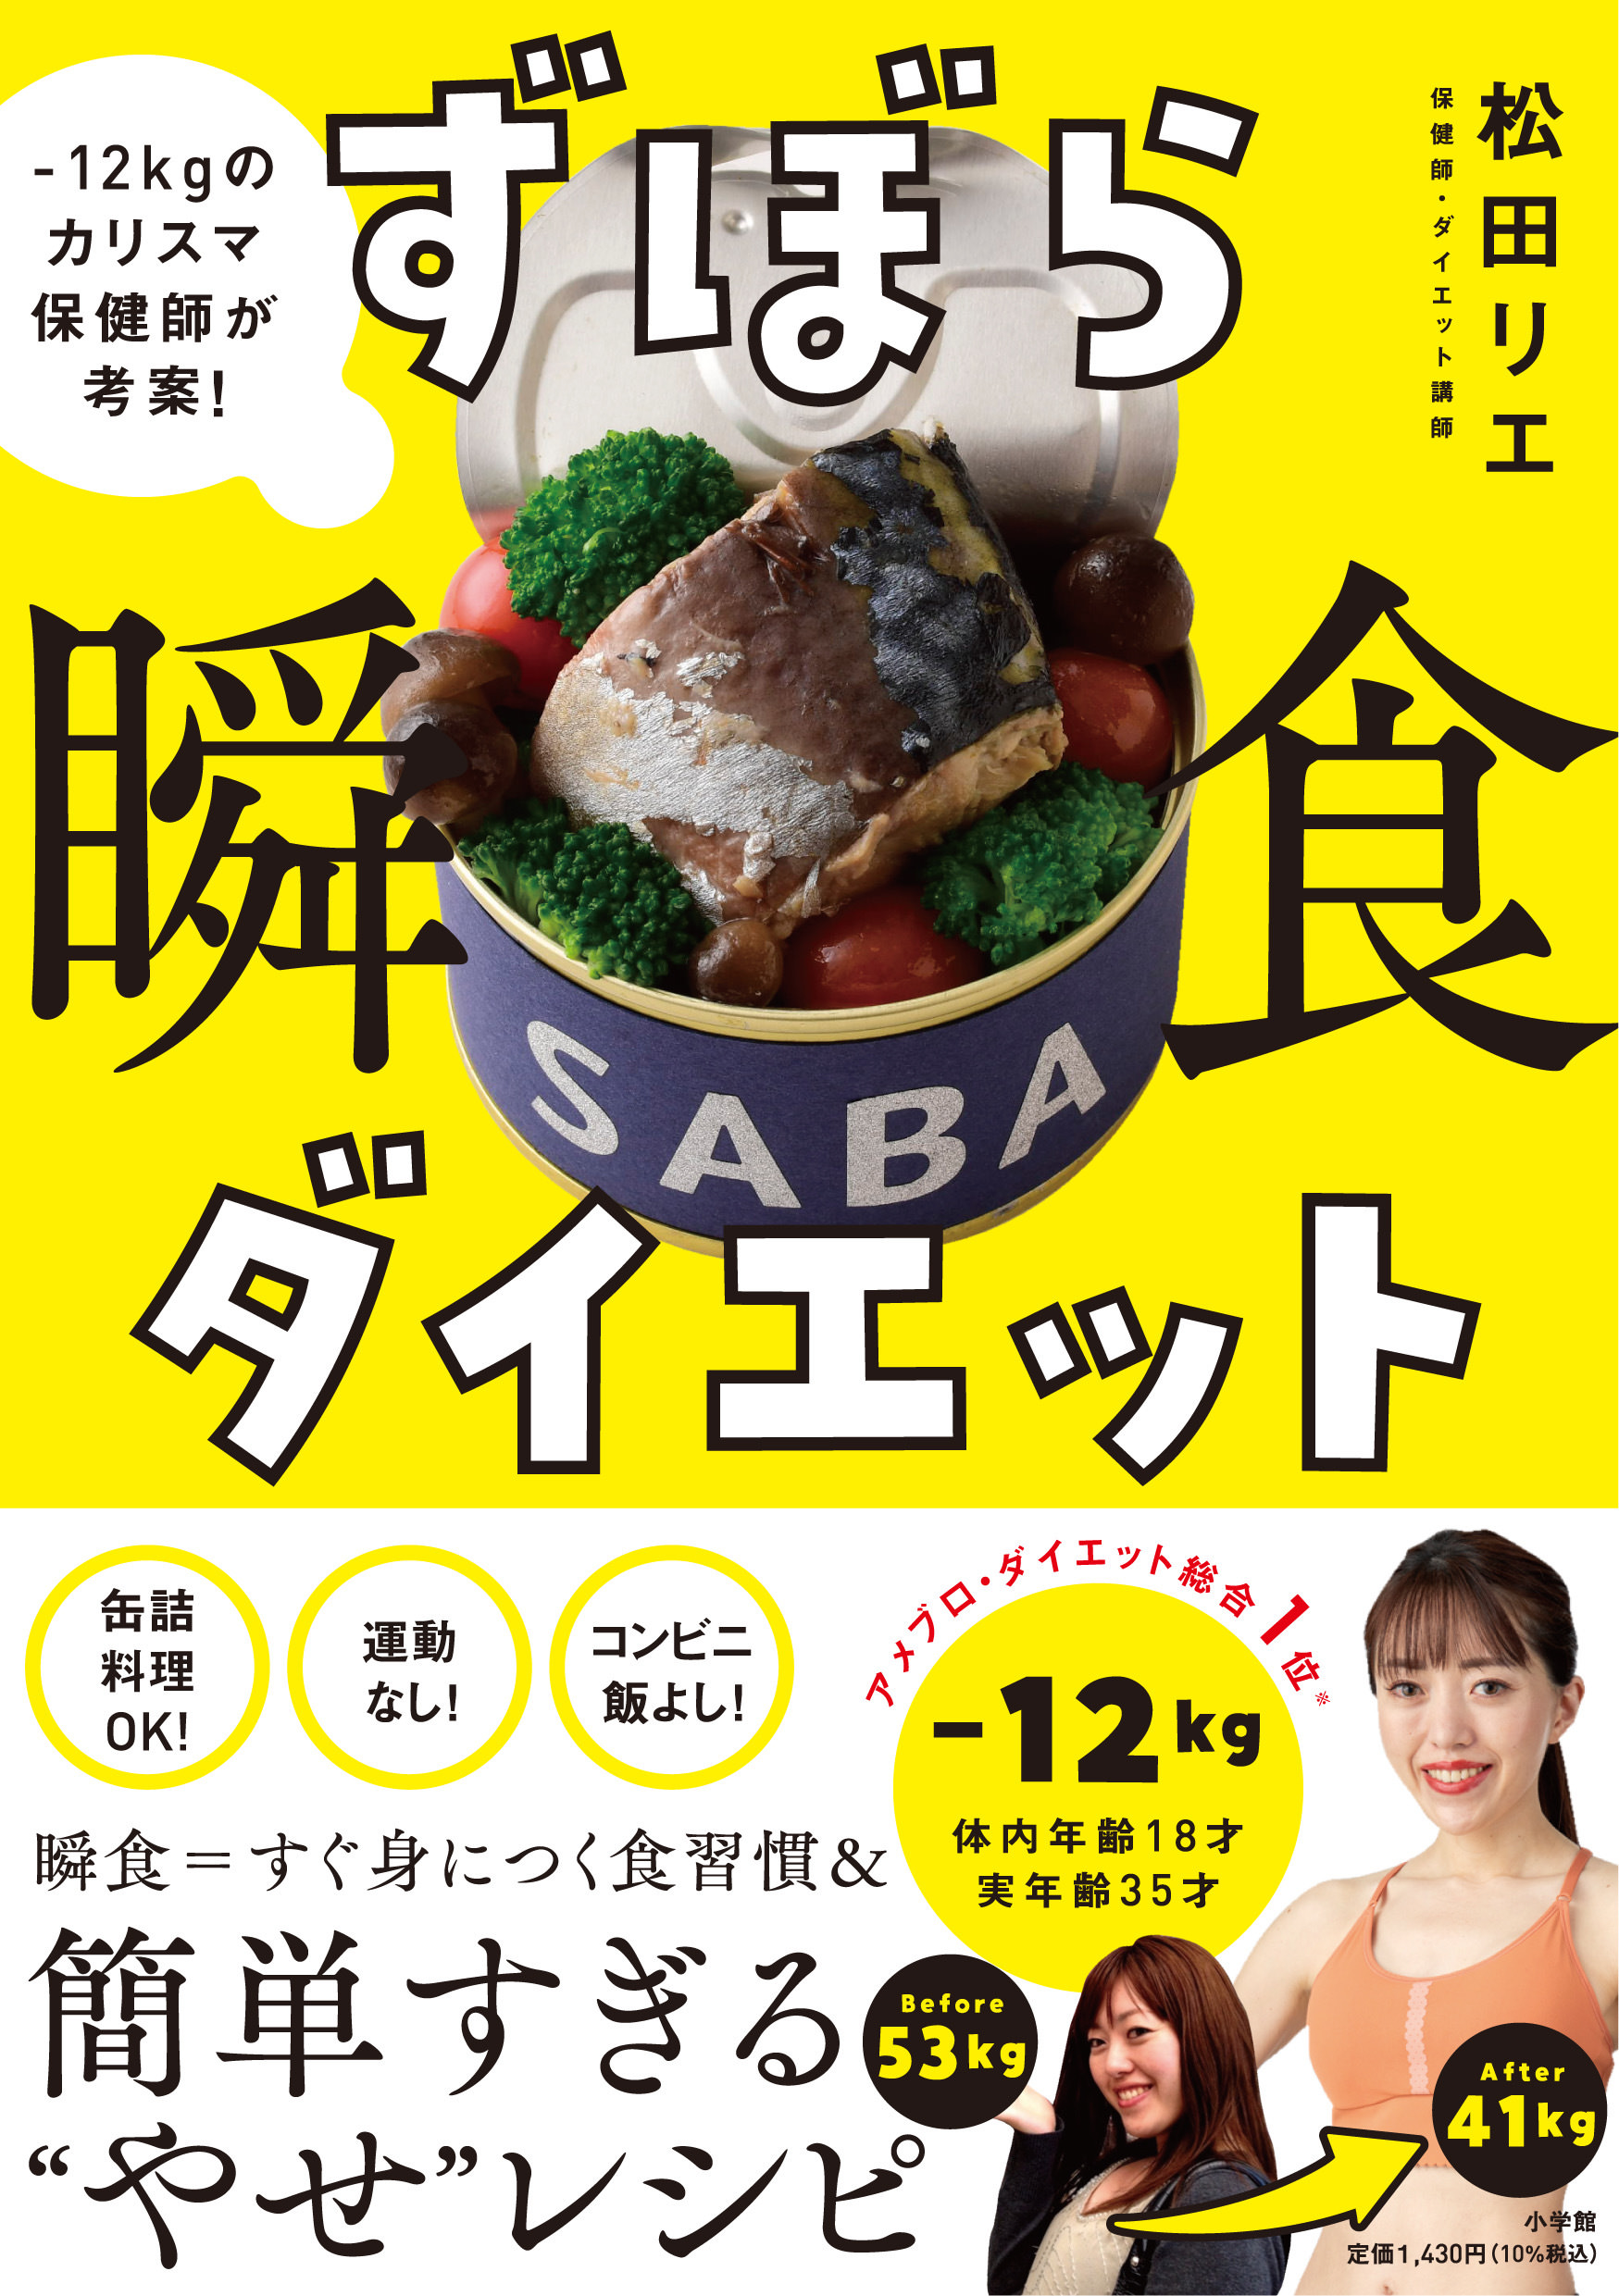 保健師・ダイエット講師の松田 リエ初の書籍
『ずぼら瞬食ダイエット』12月9日よりAmazonにて予約開始